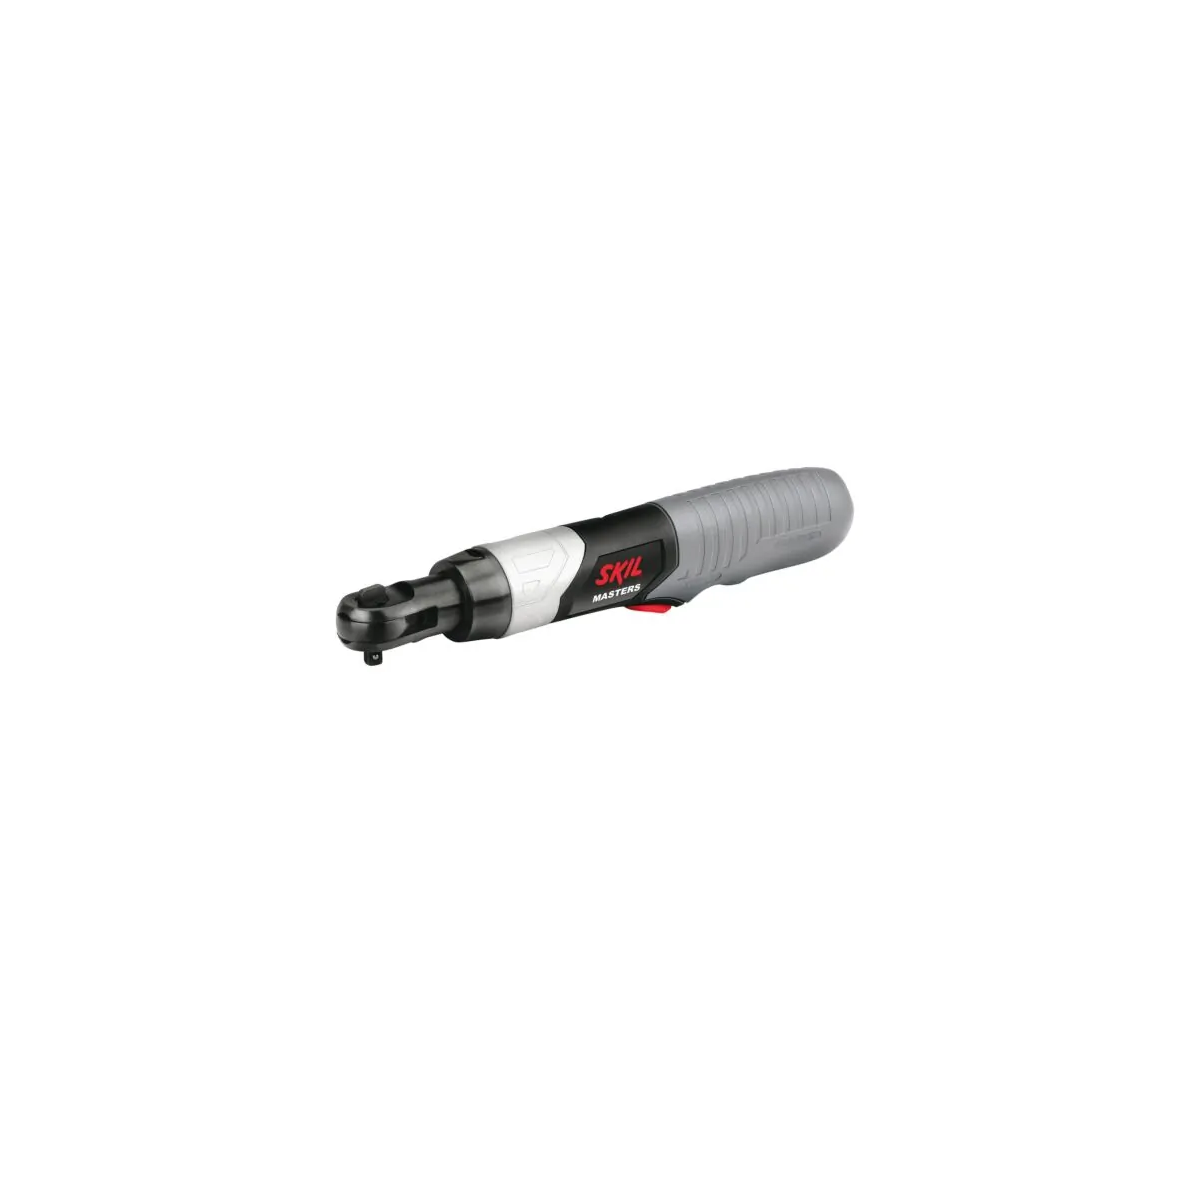 Chave inglesa com bateria de lítio F0152572MA - Comprar chaves inglesas Bosch a bom preço.